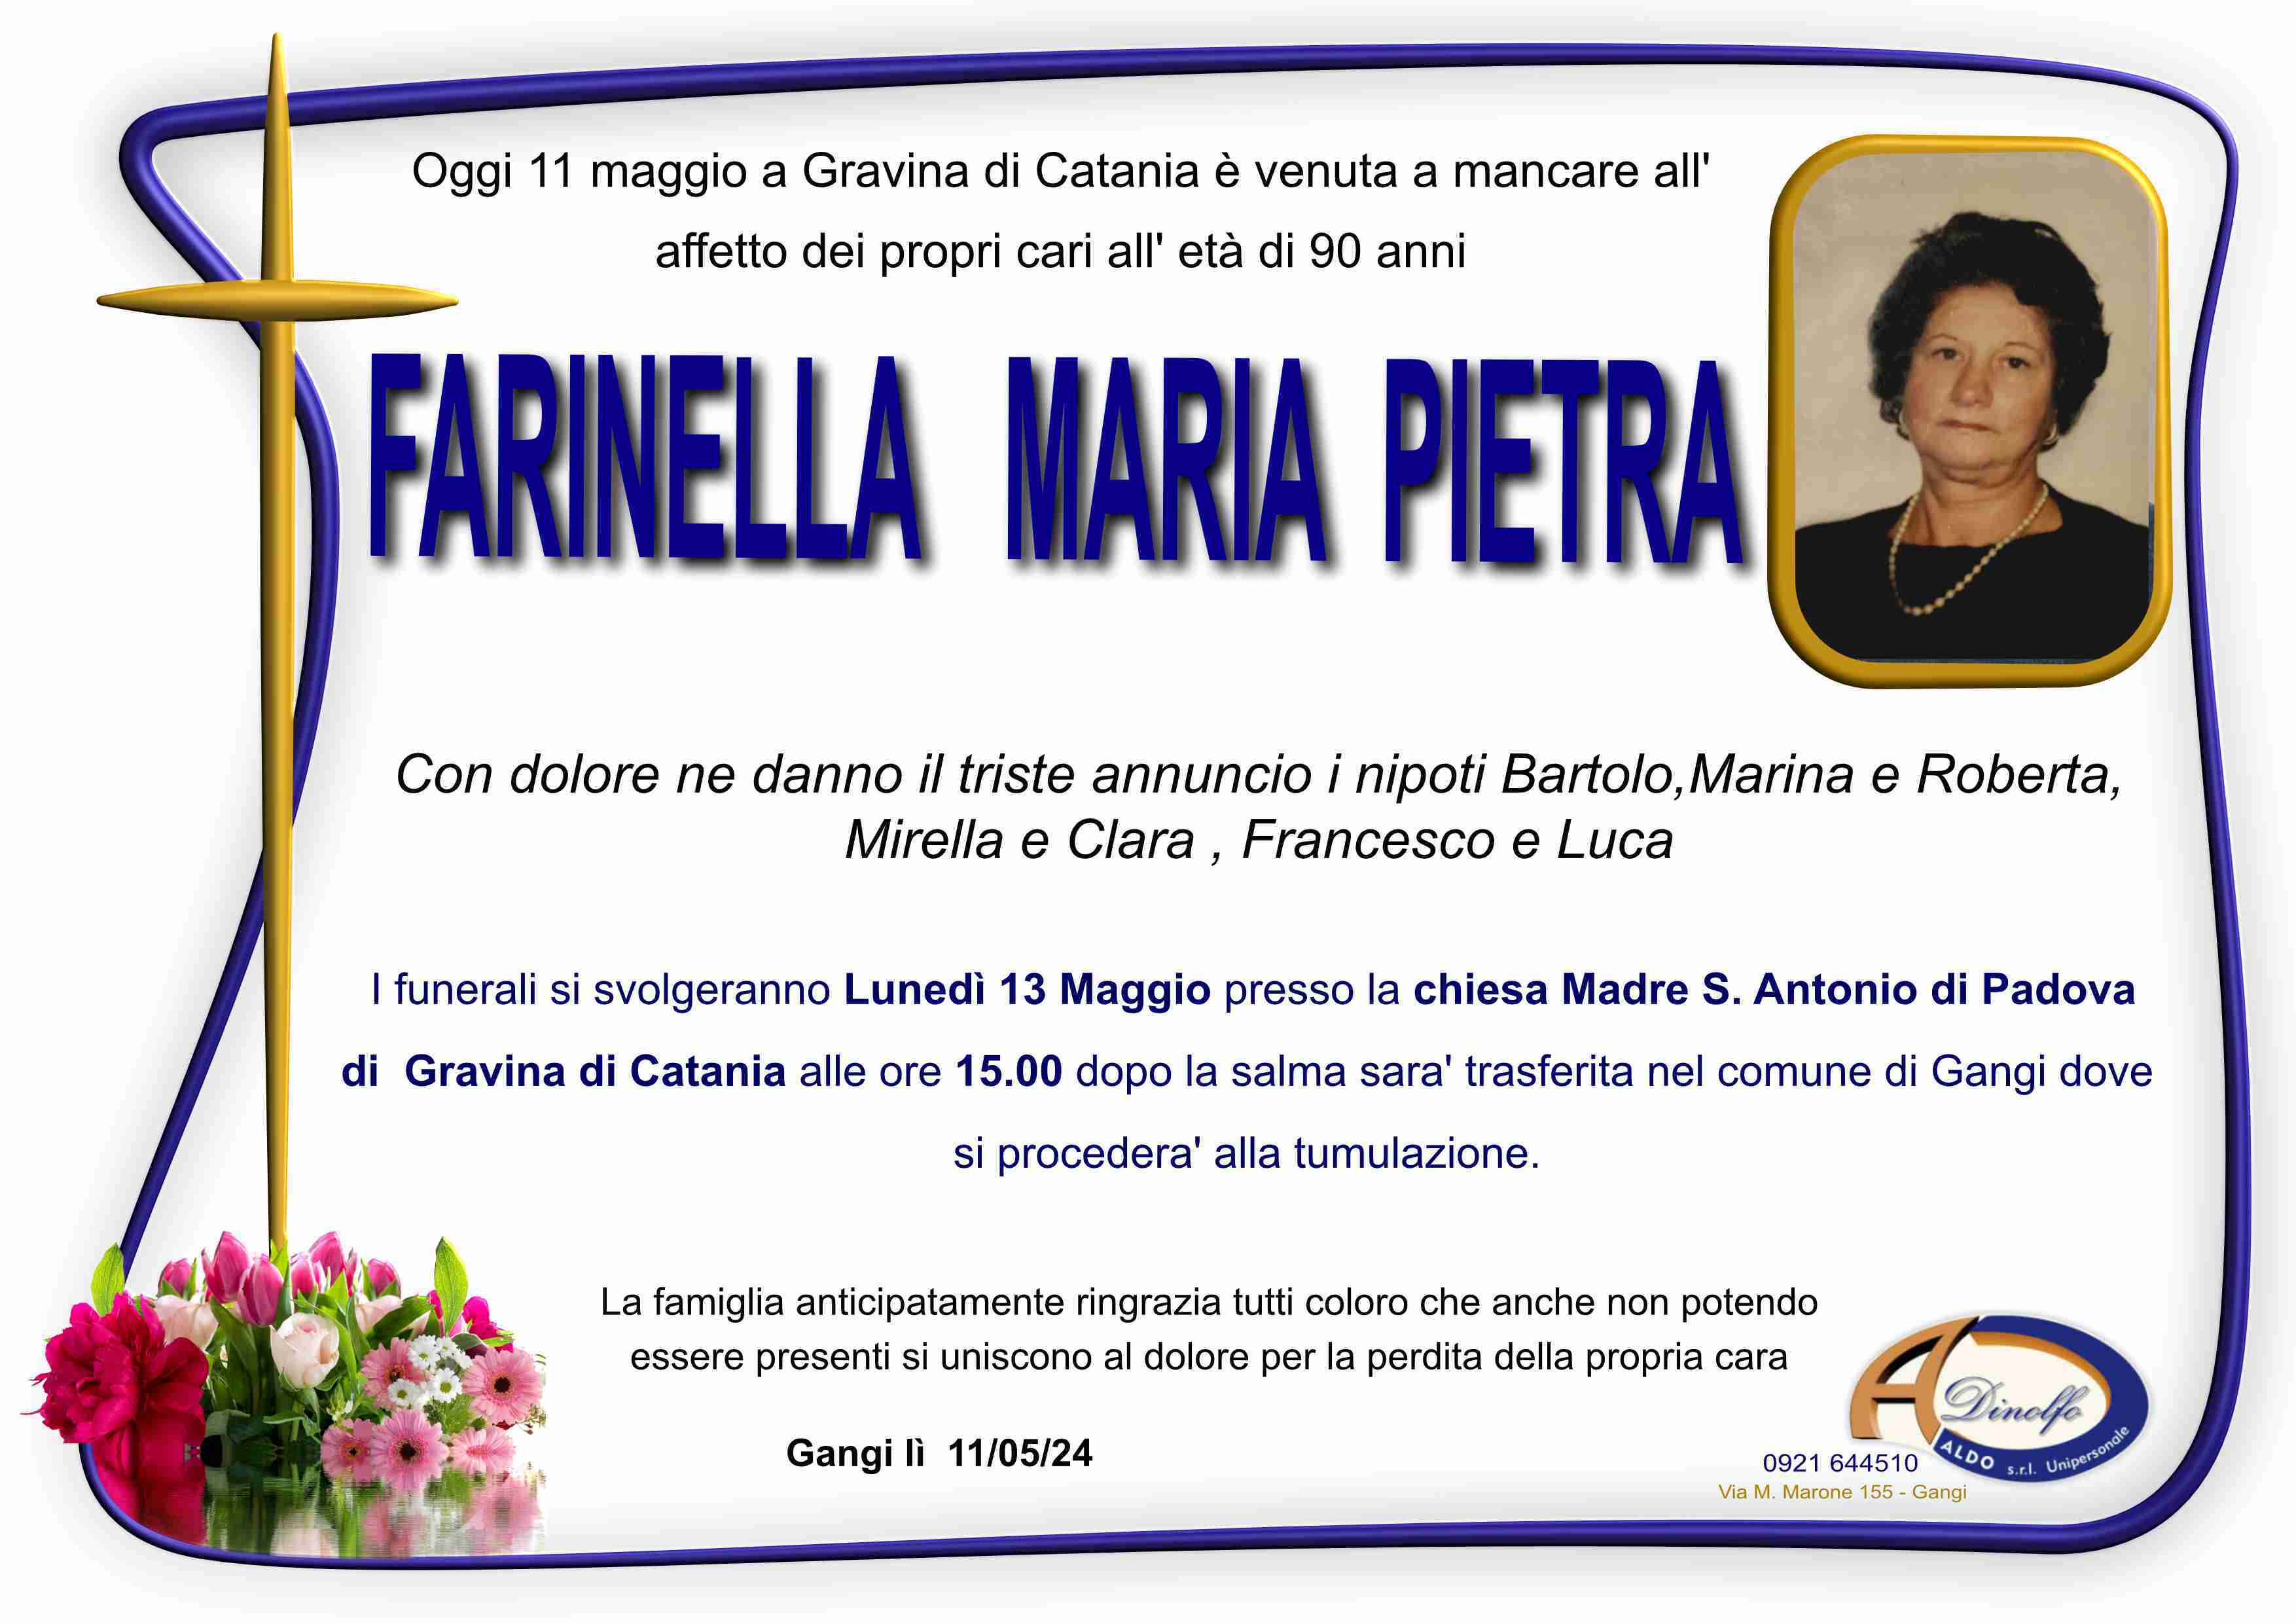 Maria Pietra Farinella